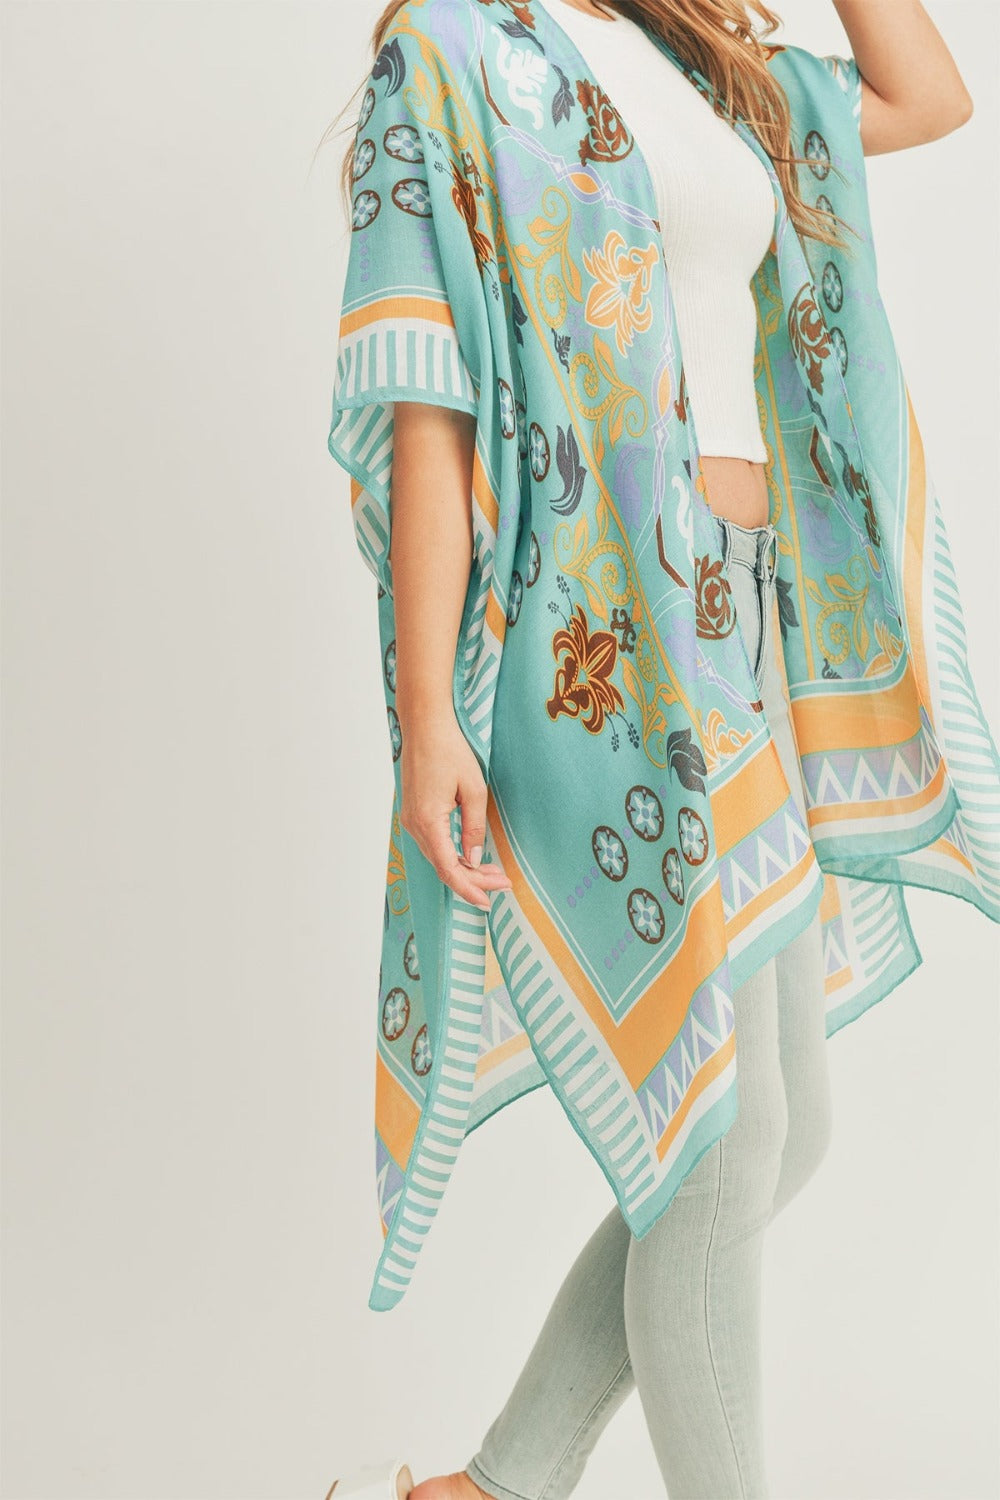 Teal & Orange Bohemian Print Kimono Kimonos JT's Designer Fashion